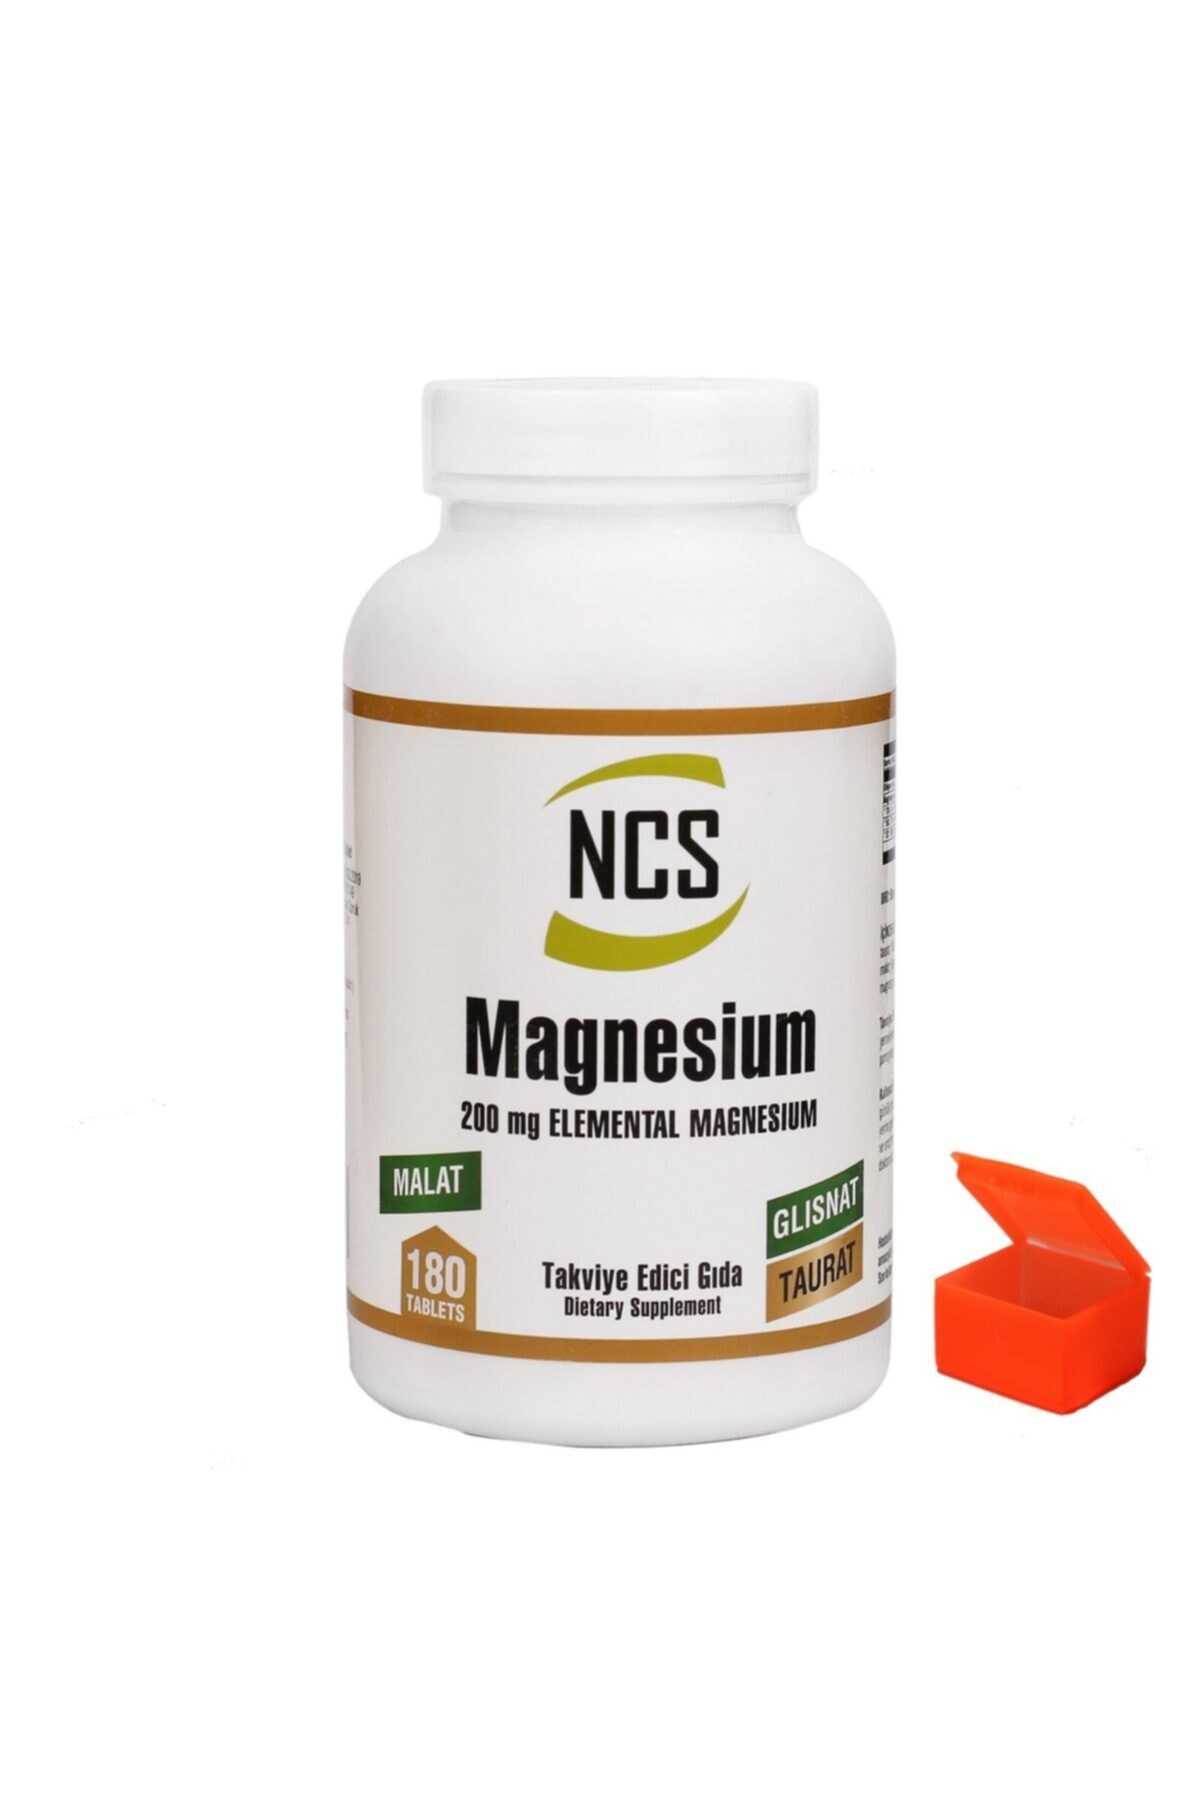 NCS Magnezyum Malat Glisinat Taurat 180 Tablet + Hap Kutusu